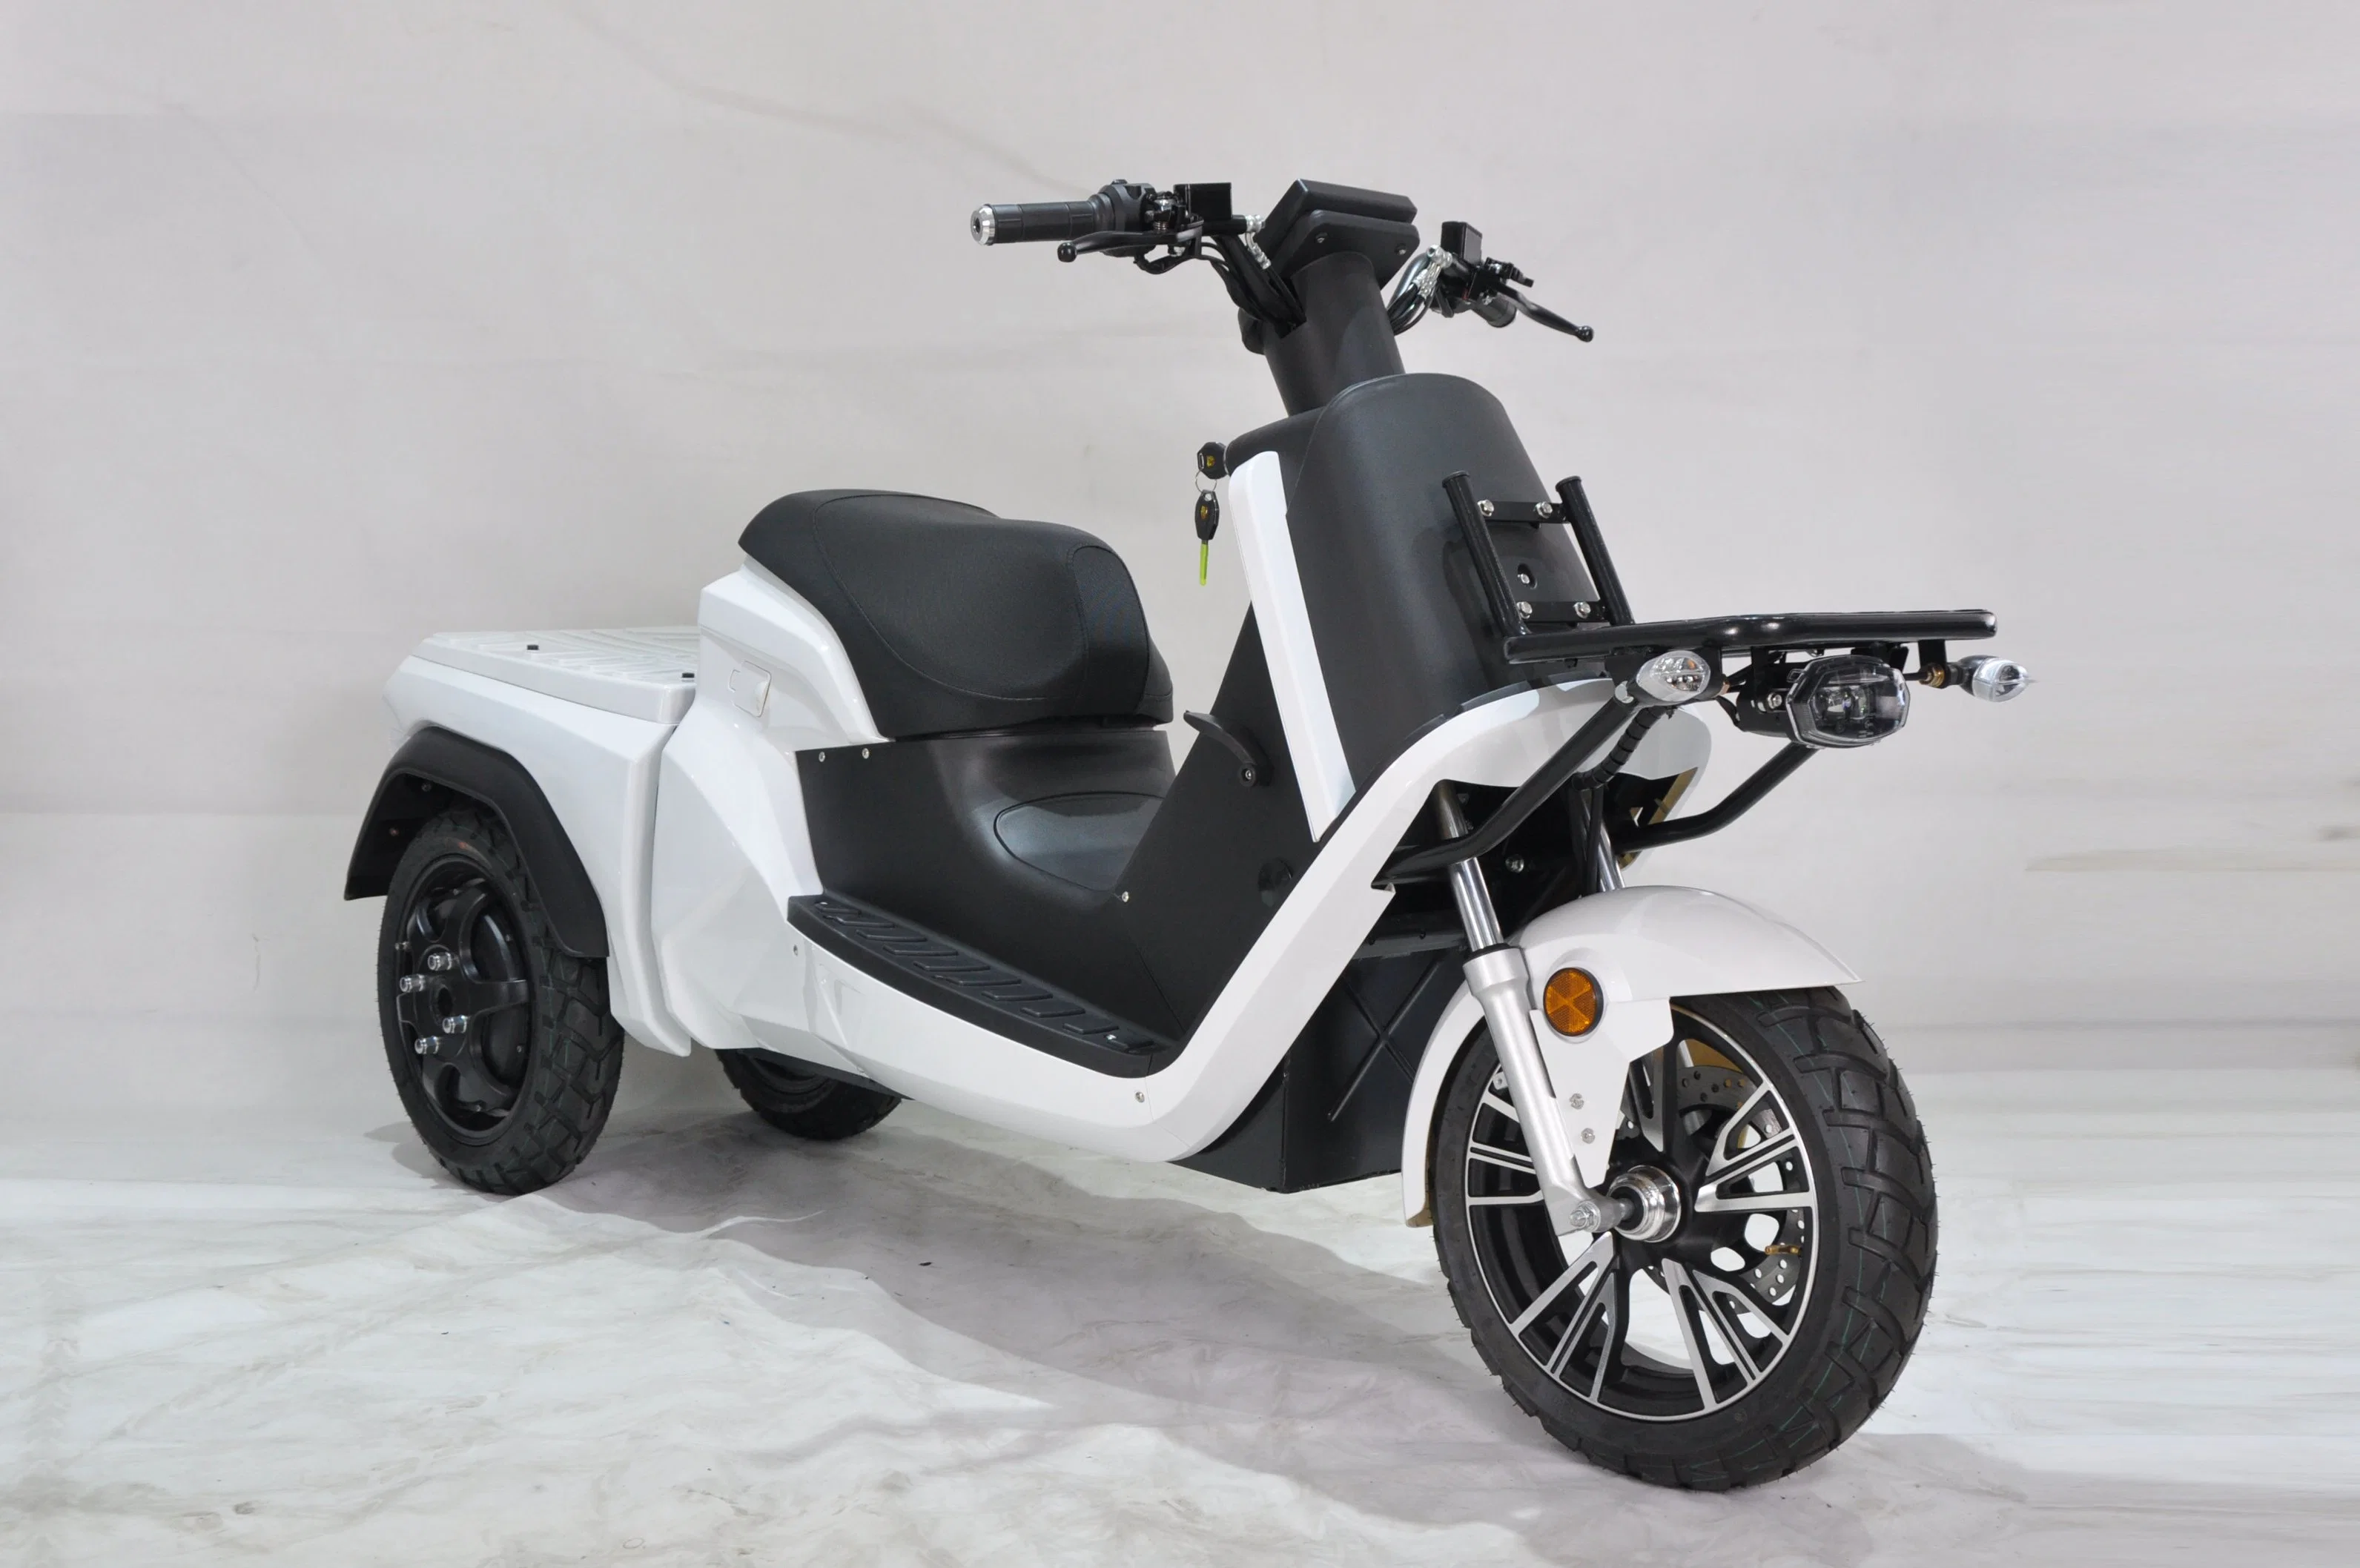 Vente à chaud Trike électrique de livraison tricycle 3 roues 3 Moto-roue avec CEE